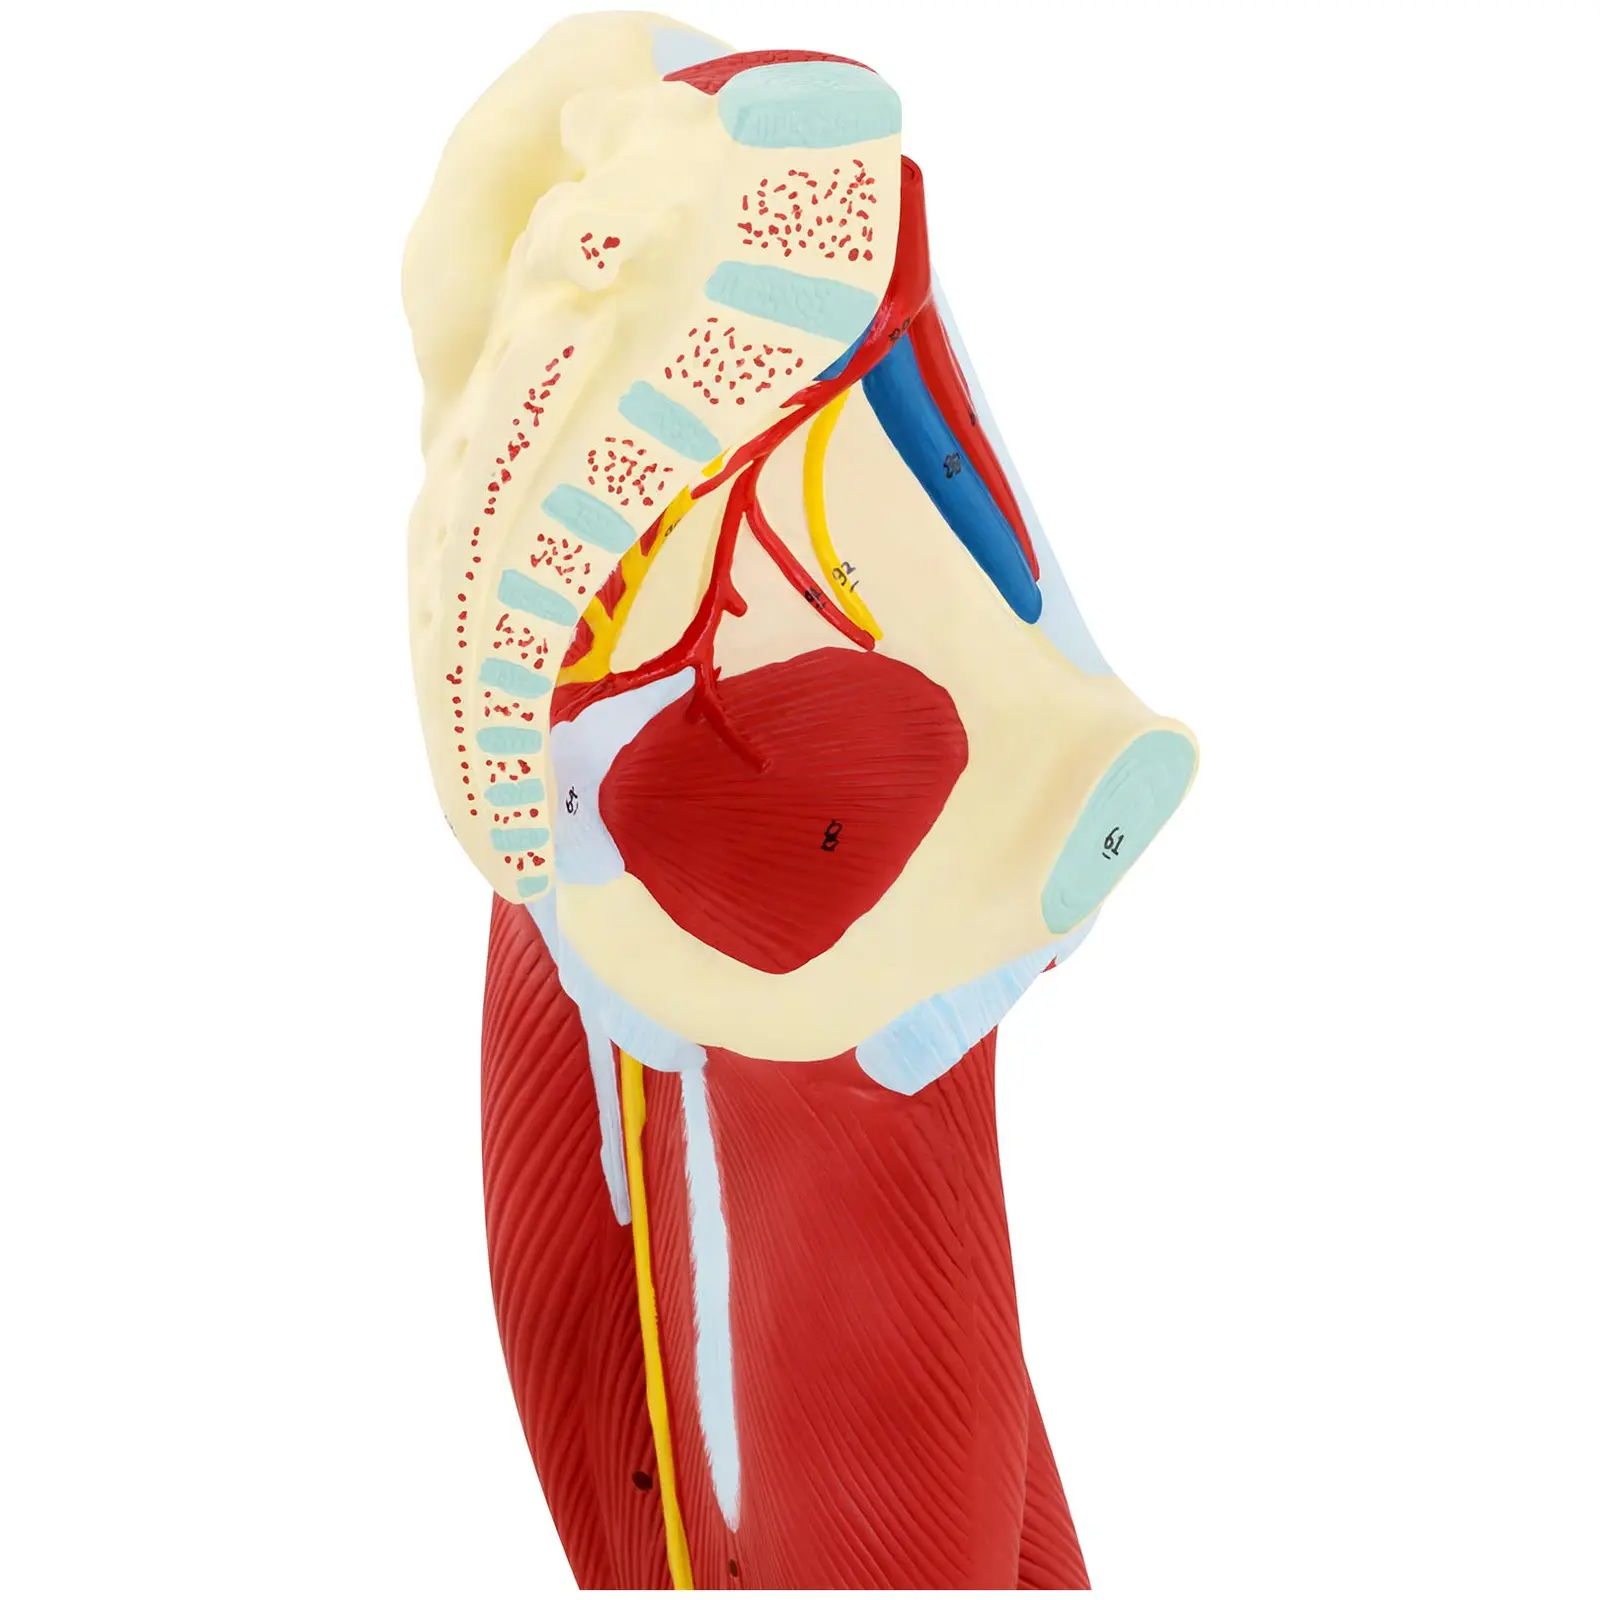 Model de picior - Mușchii piciorului - Colorat